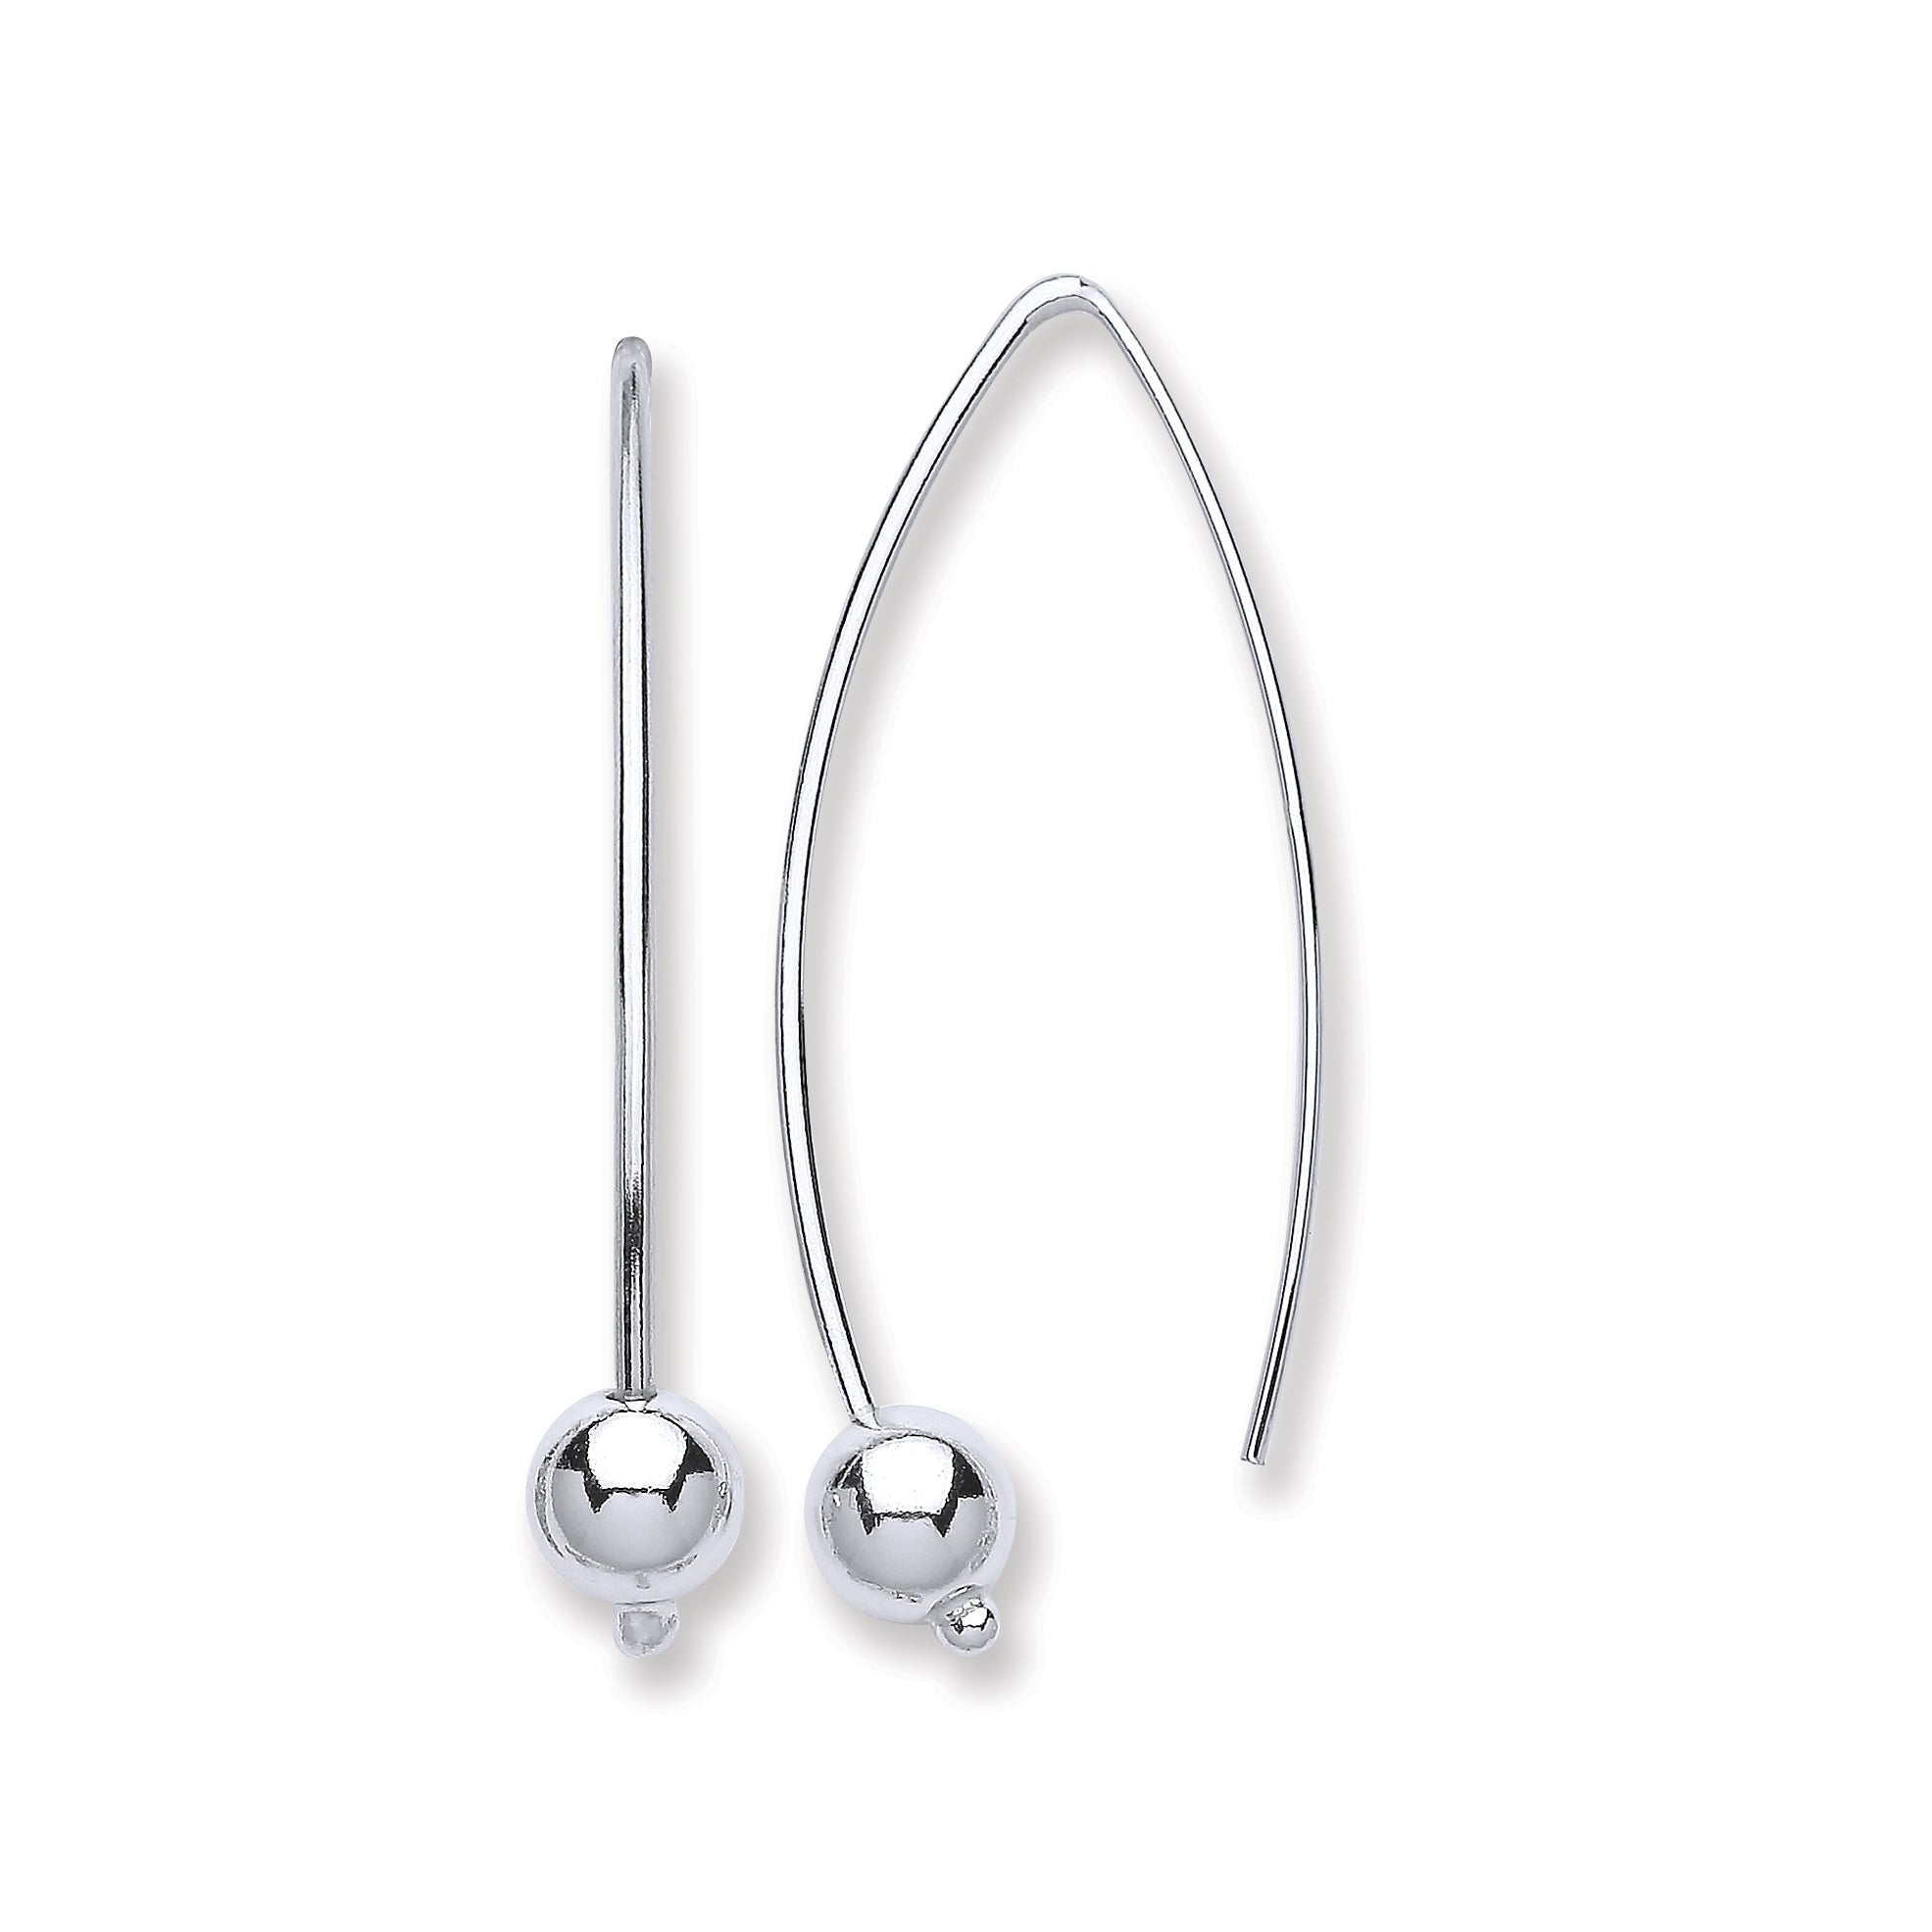 Silver Two Pin Earrings